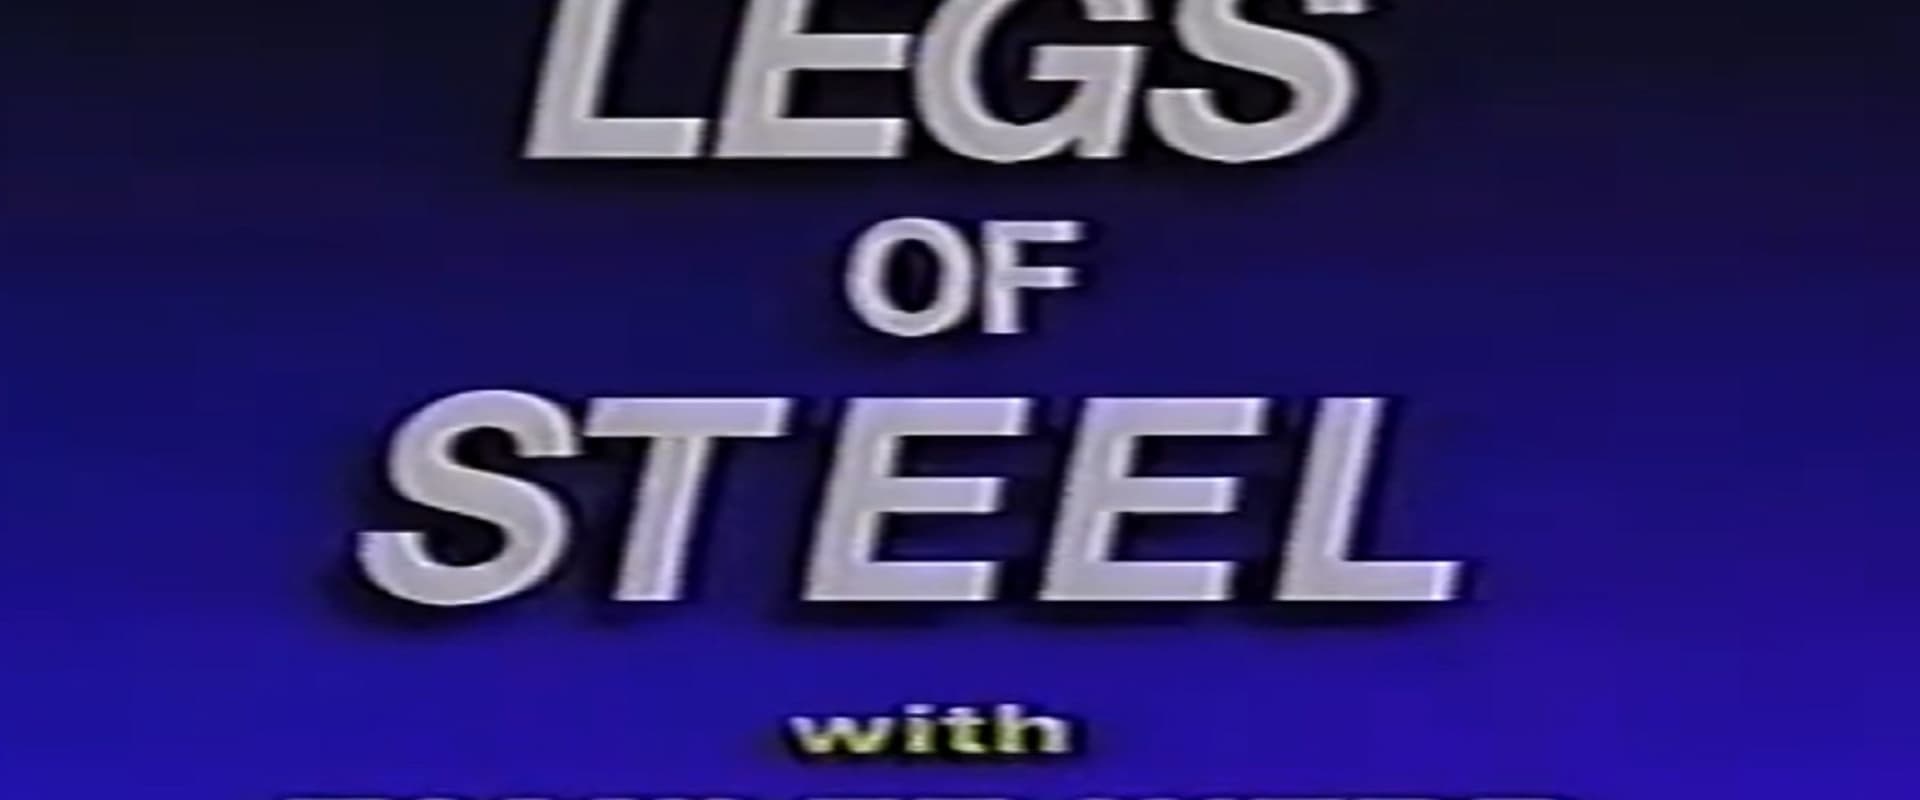 Legs of Steel